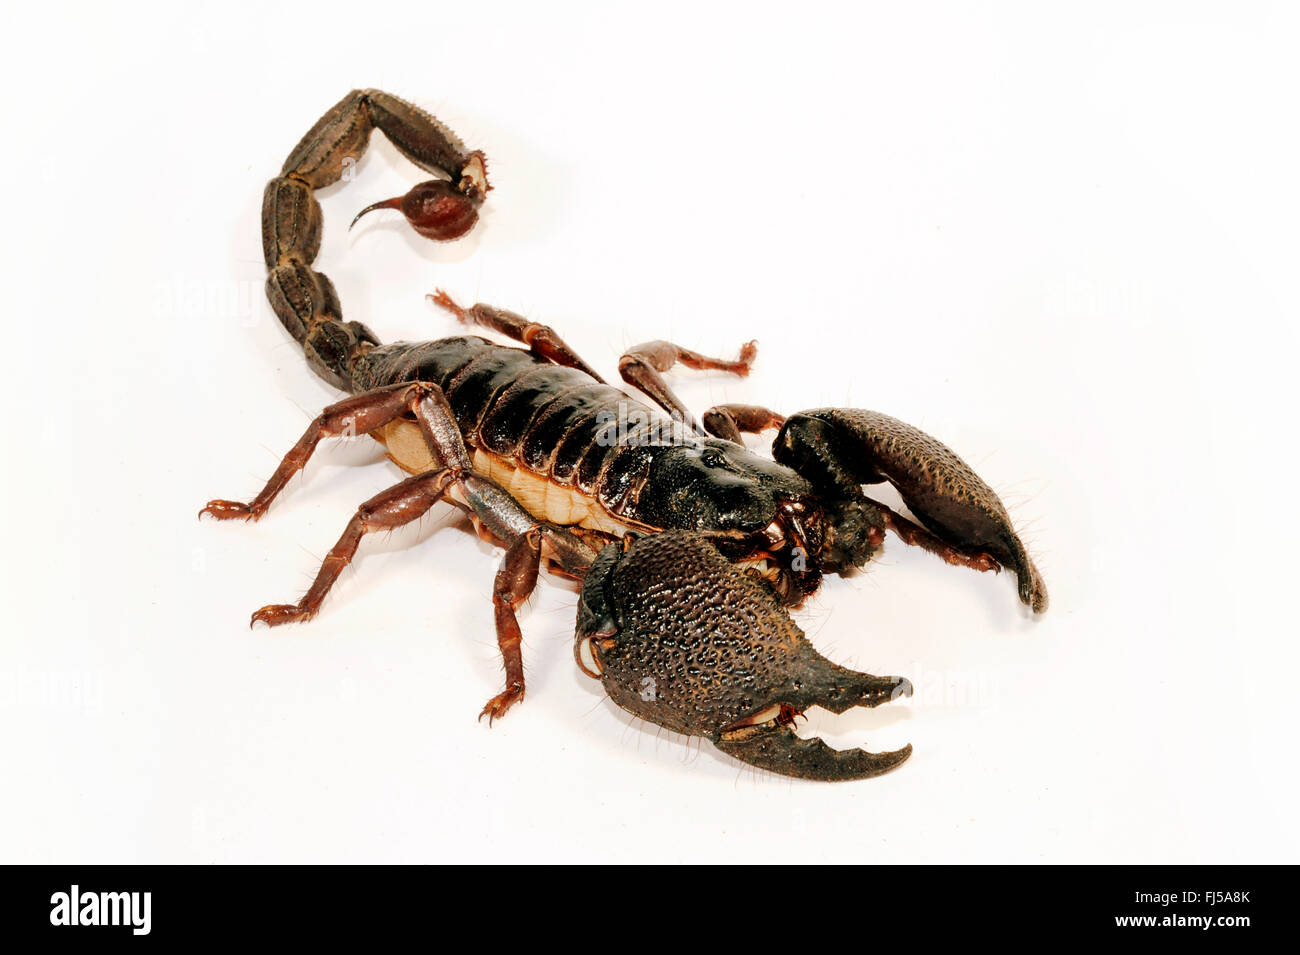 Foresta gigante Scorpion (Heterometrus swammerdami), innocuo solo lievi velenosi Scorpione Gigante, Scorpion più grande in tutto il mondo Foto Stock